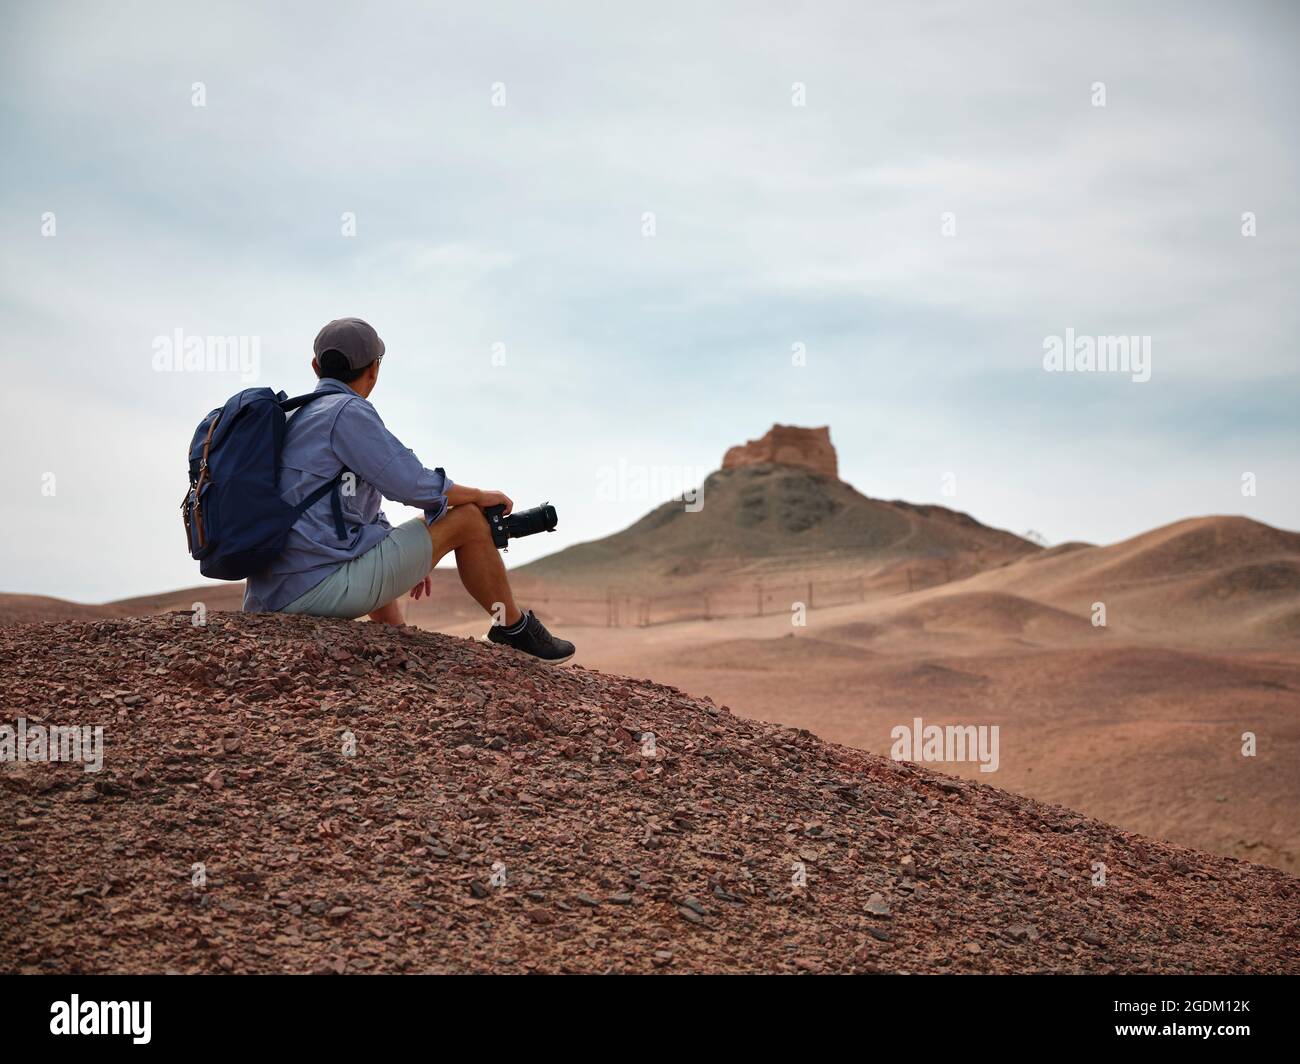 photographe de paysage de routard asiatique mâle assis au sommet d'une colline regardant la vue, vue latérale Banque D'Images